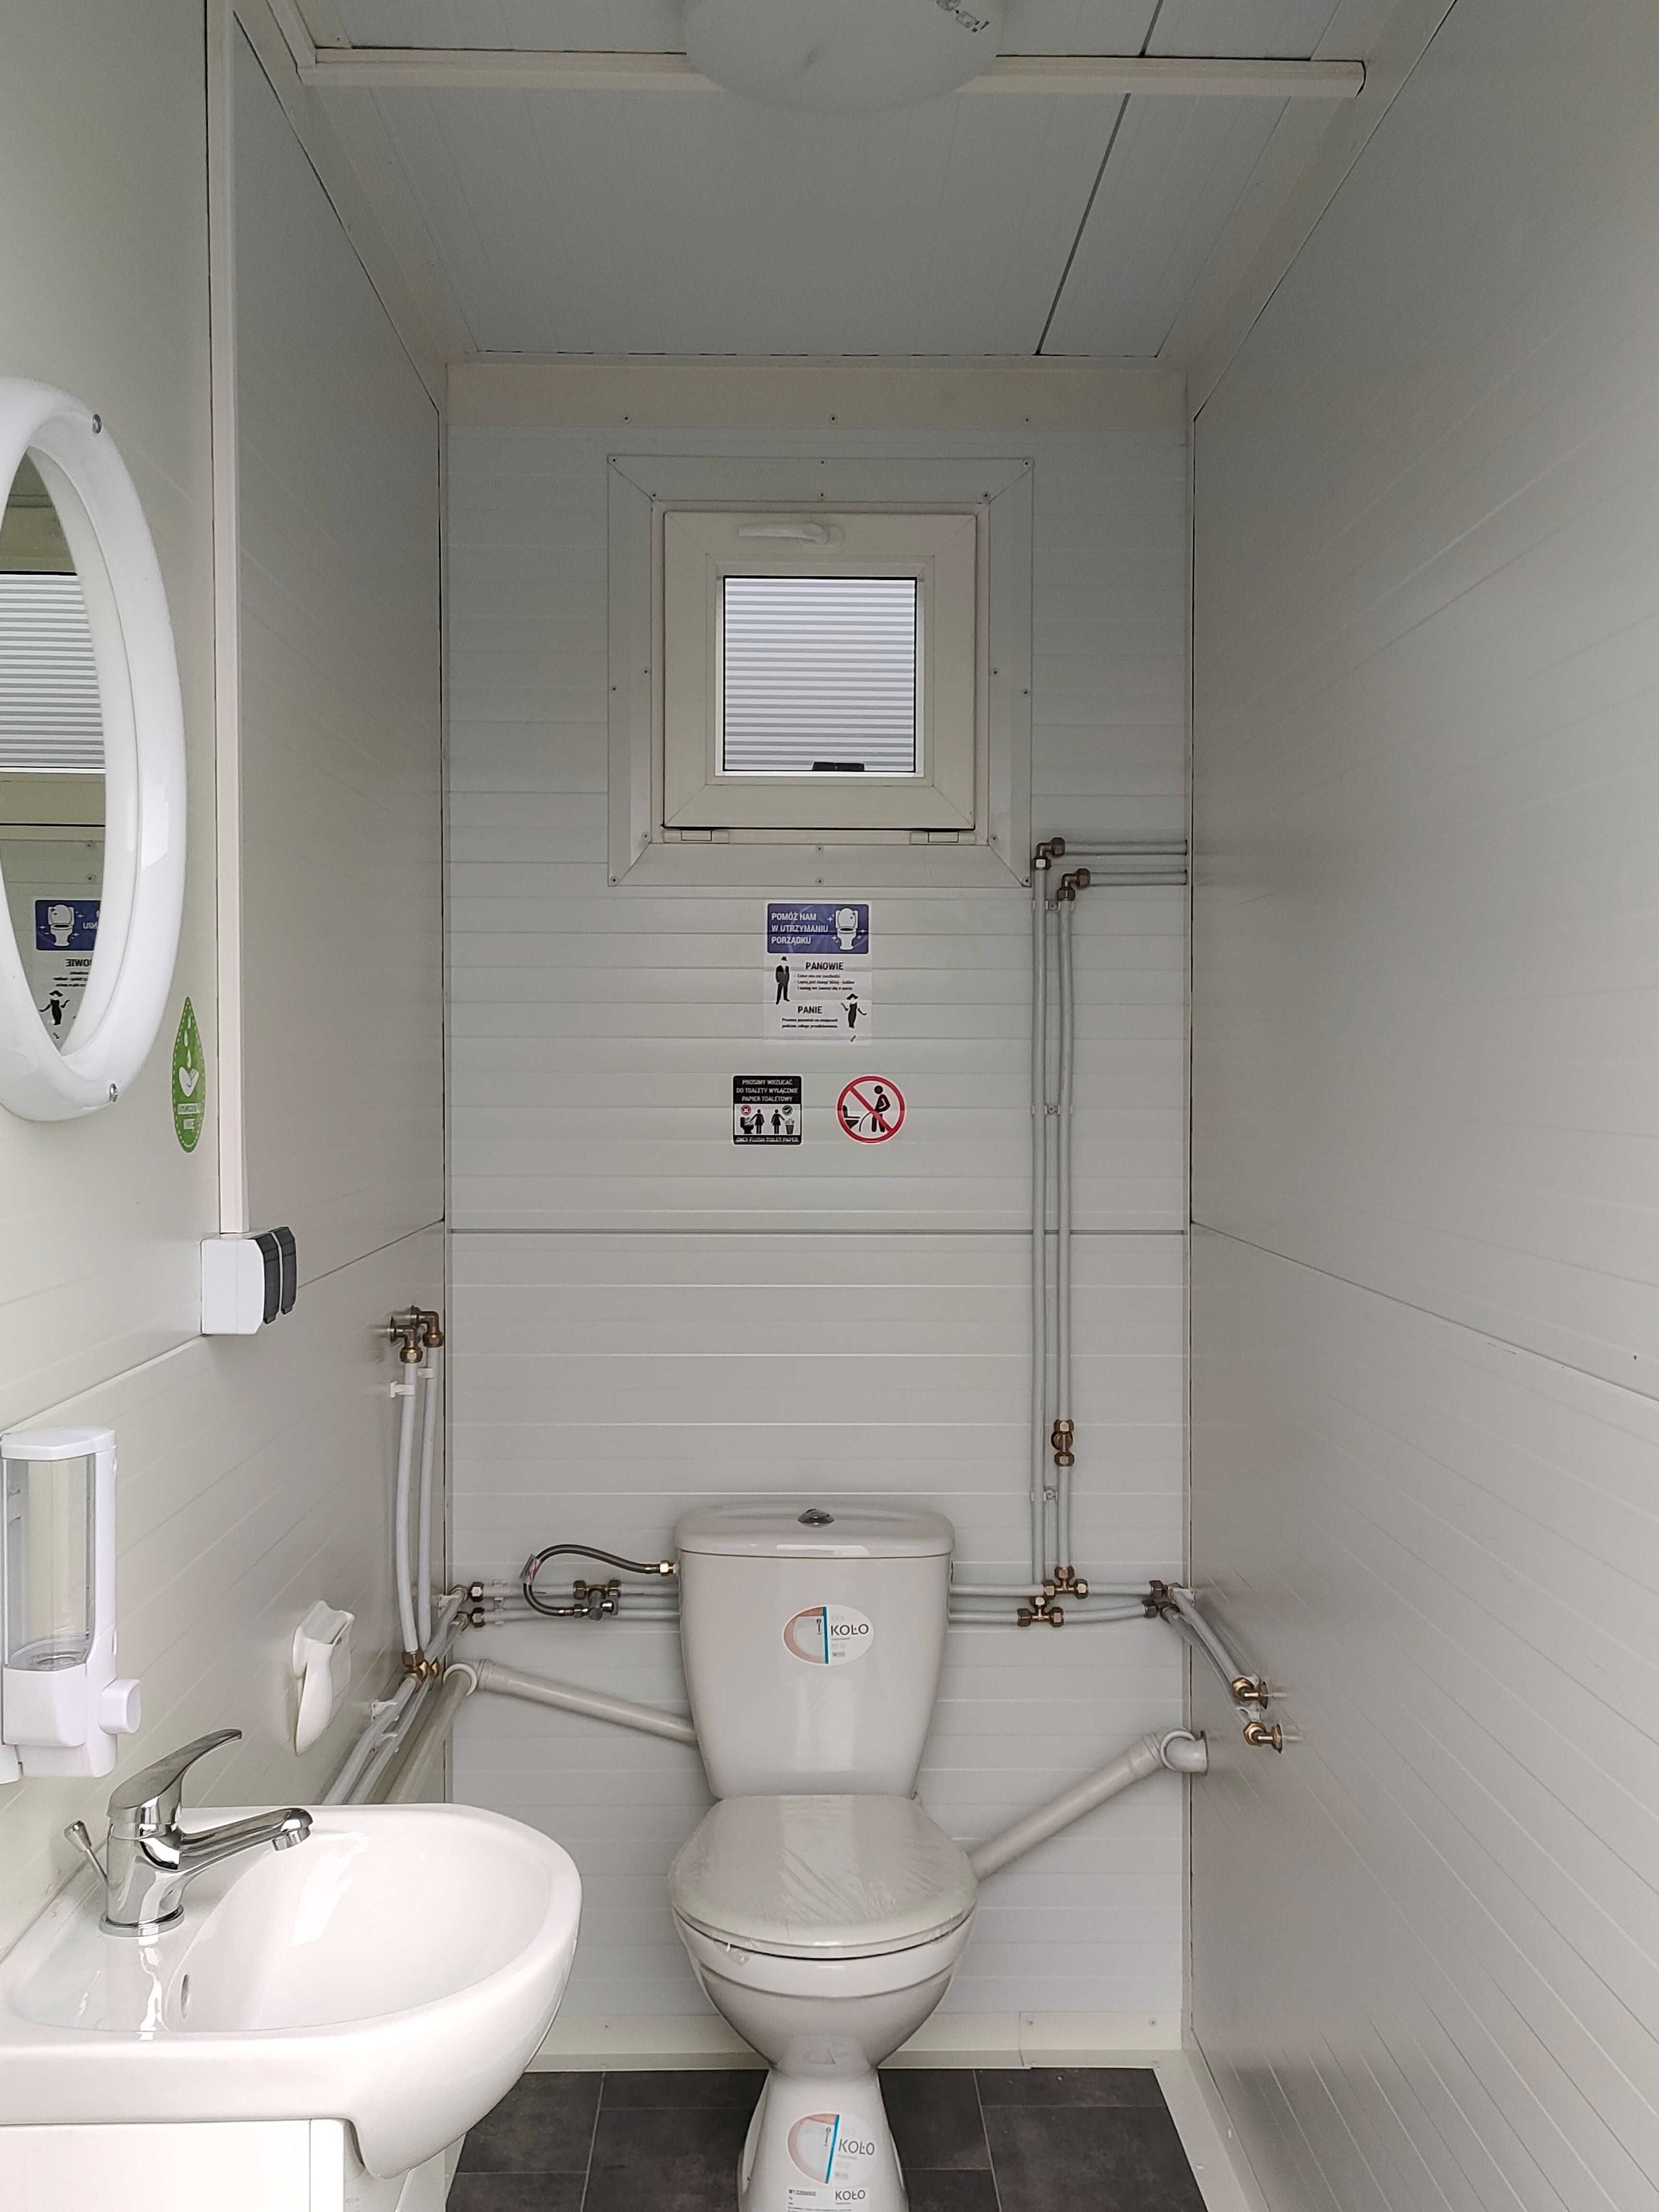 wc toaleta kuchnia prysznic sanitarny socjalny budka kontener pawilon